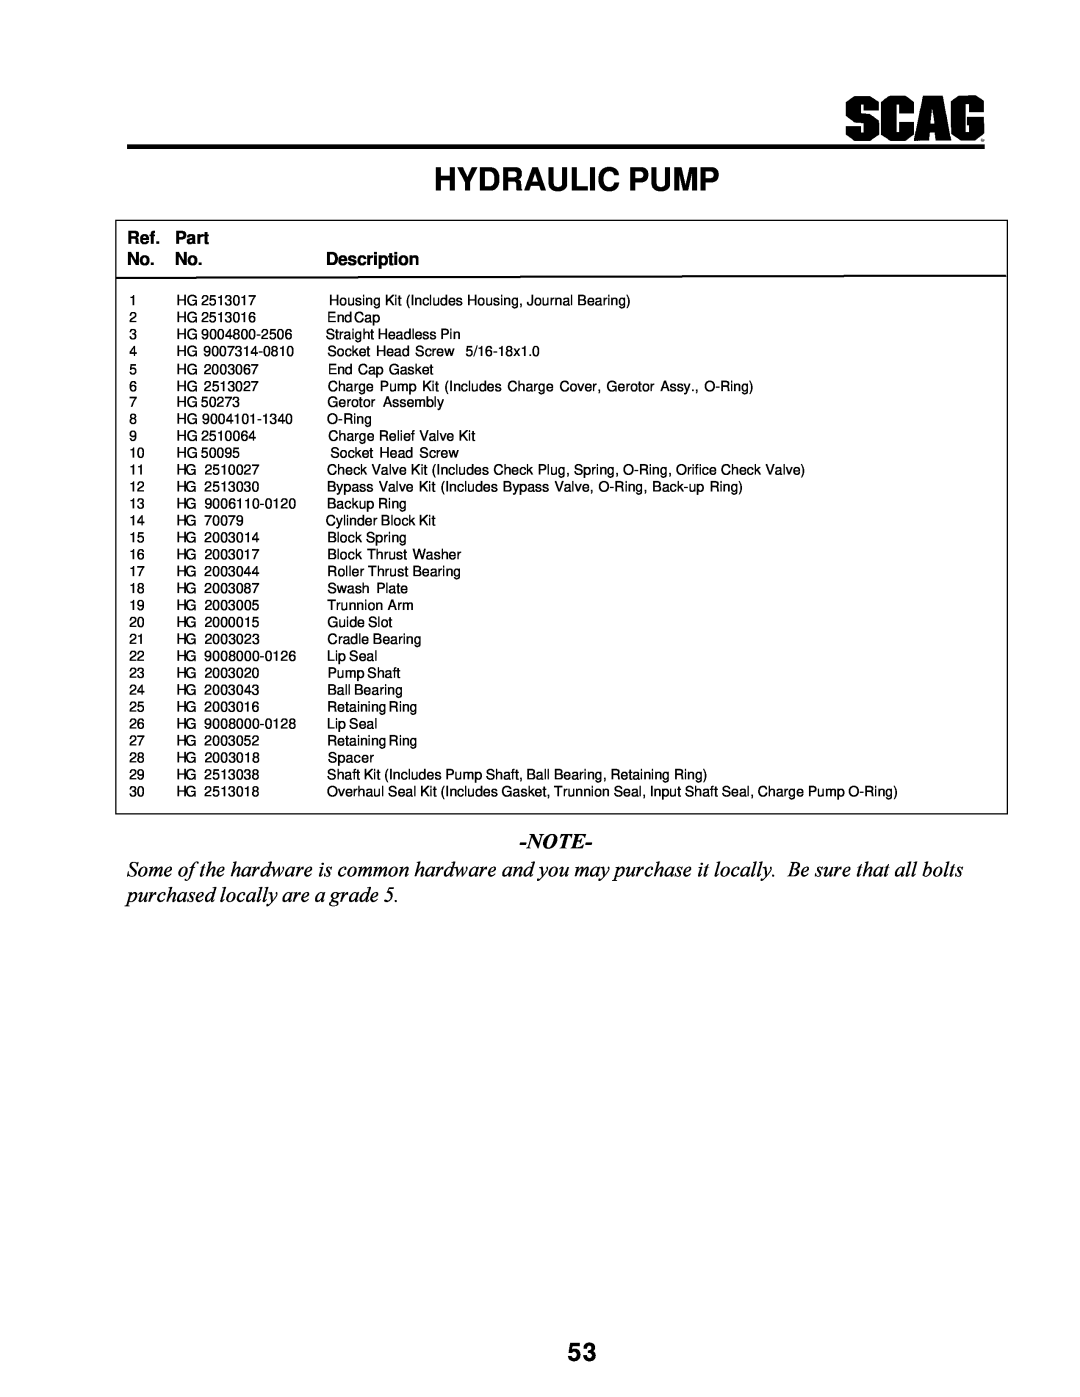 MB QUART SCR manual Hydraulic Pump, Part, Description 